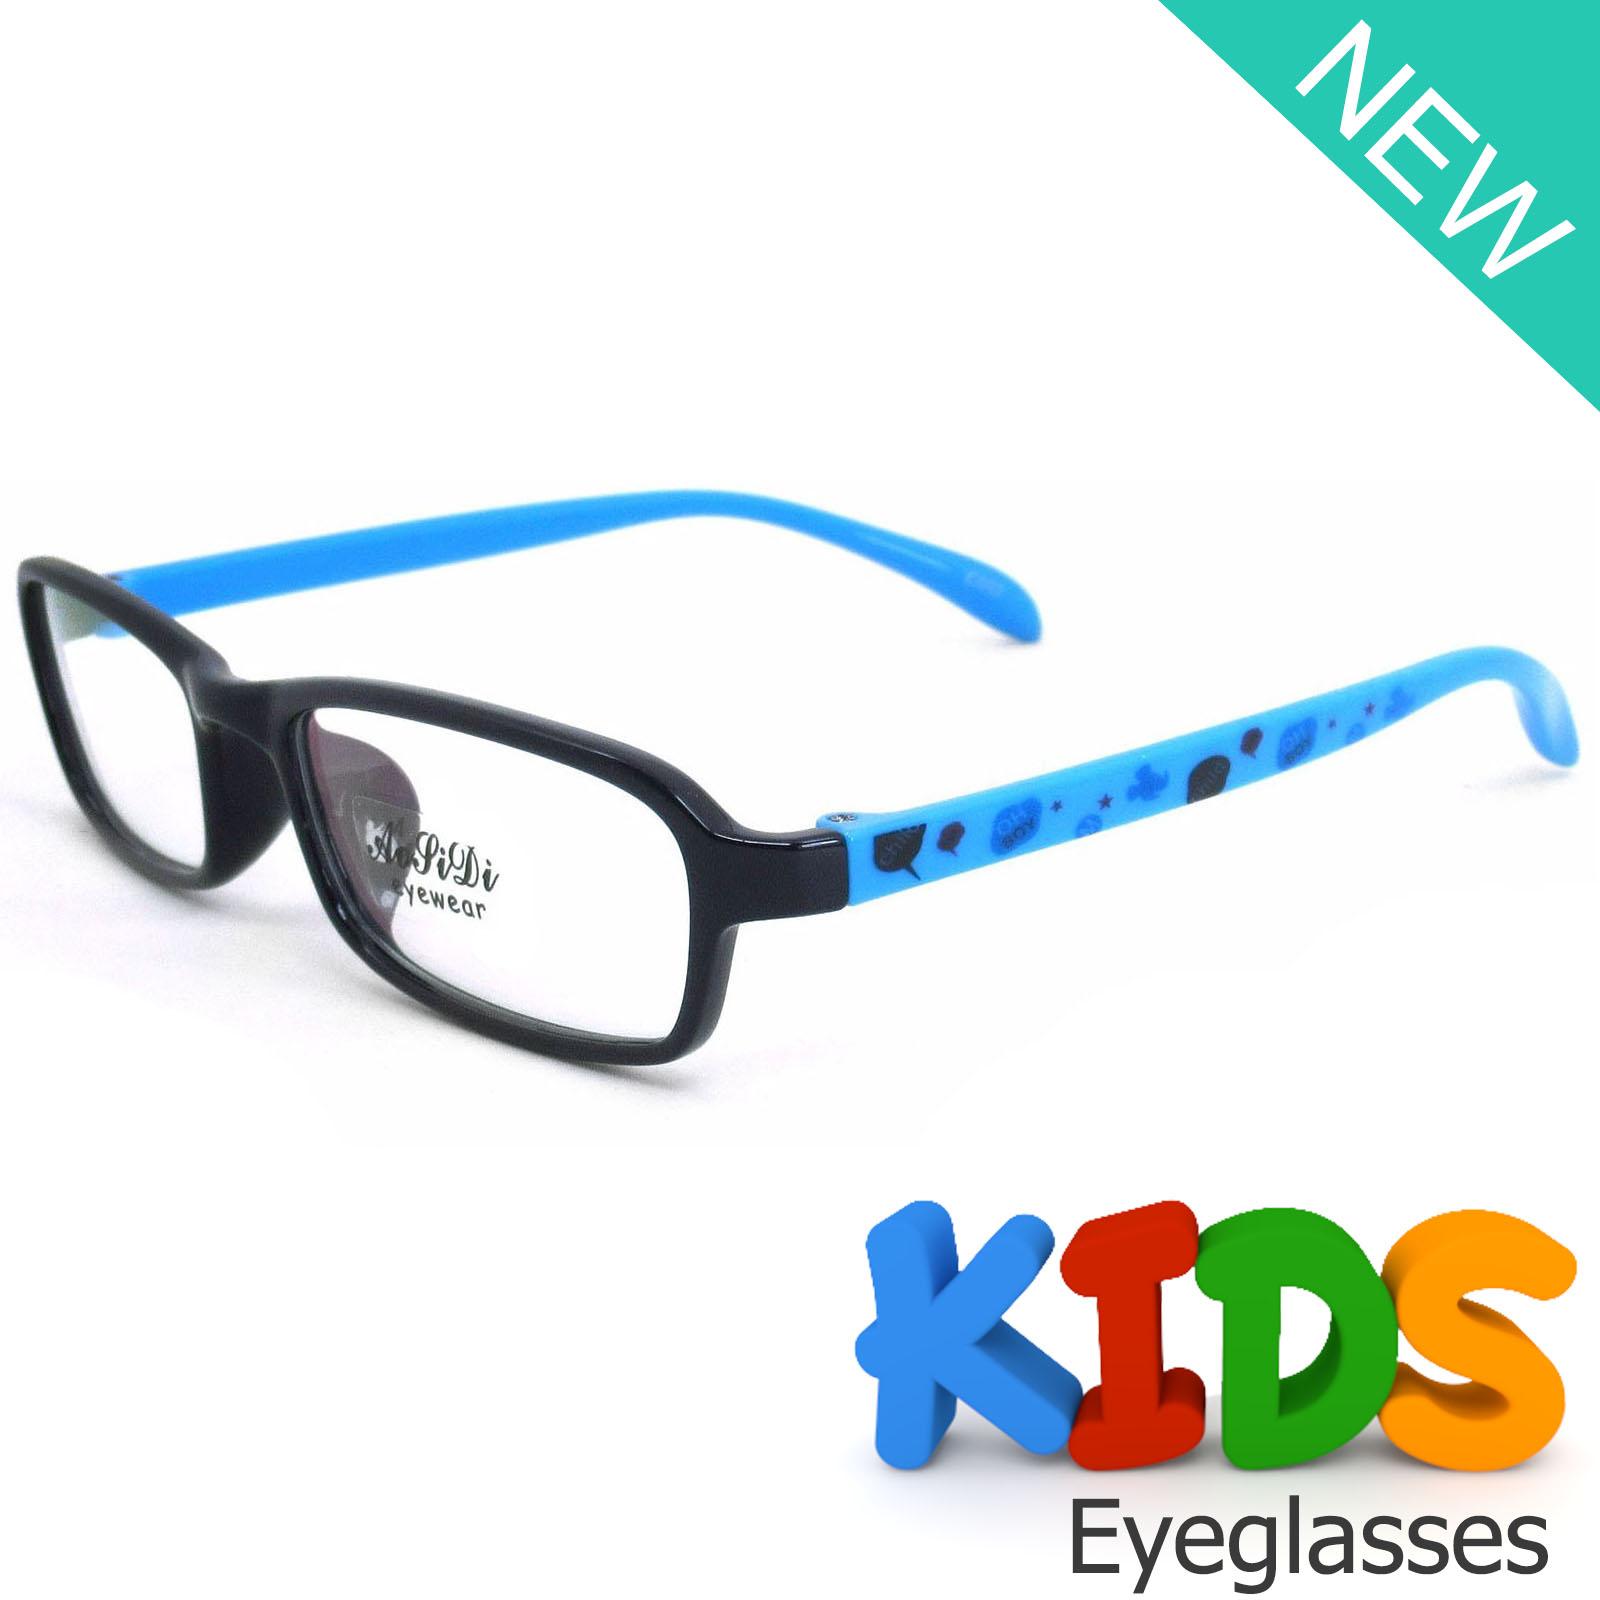 แว่นตาเกาหลีเด็ก Fashion Korea Children แว่นตาเด็ก รุ่น 1613 C-2 ดำเคลือบเงาขาฟ้า กรอบแว่นตาเด็ก Rectangle ทรงสี่เหลี่ยมผืนผ้า Eyeglass baby frame ( สำหรับตัดเลนส์ ) วัสดุ PC เบา ขาข้อต่อ Kid leg joints Plastic Grade A material Eyewear Top Glasses